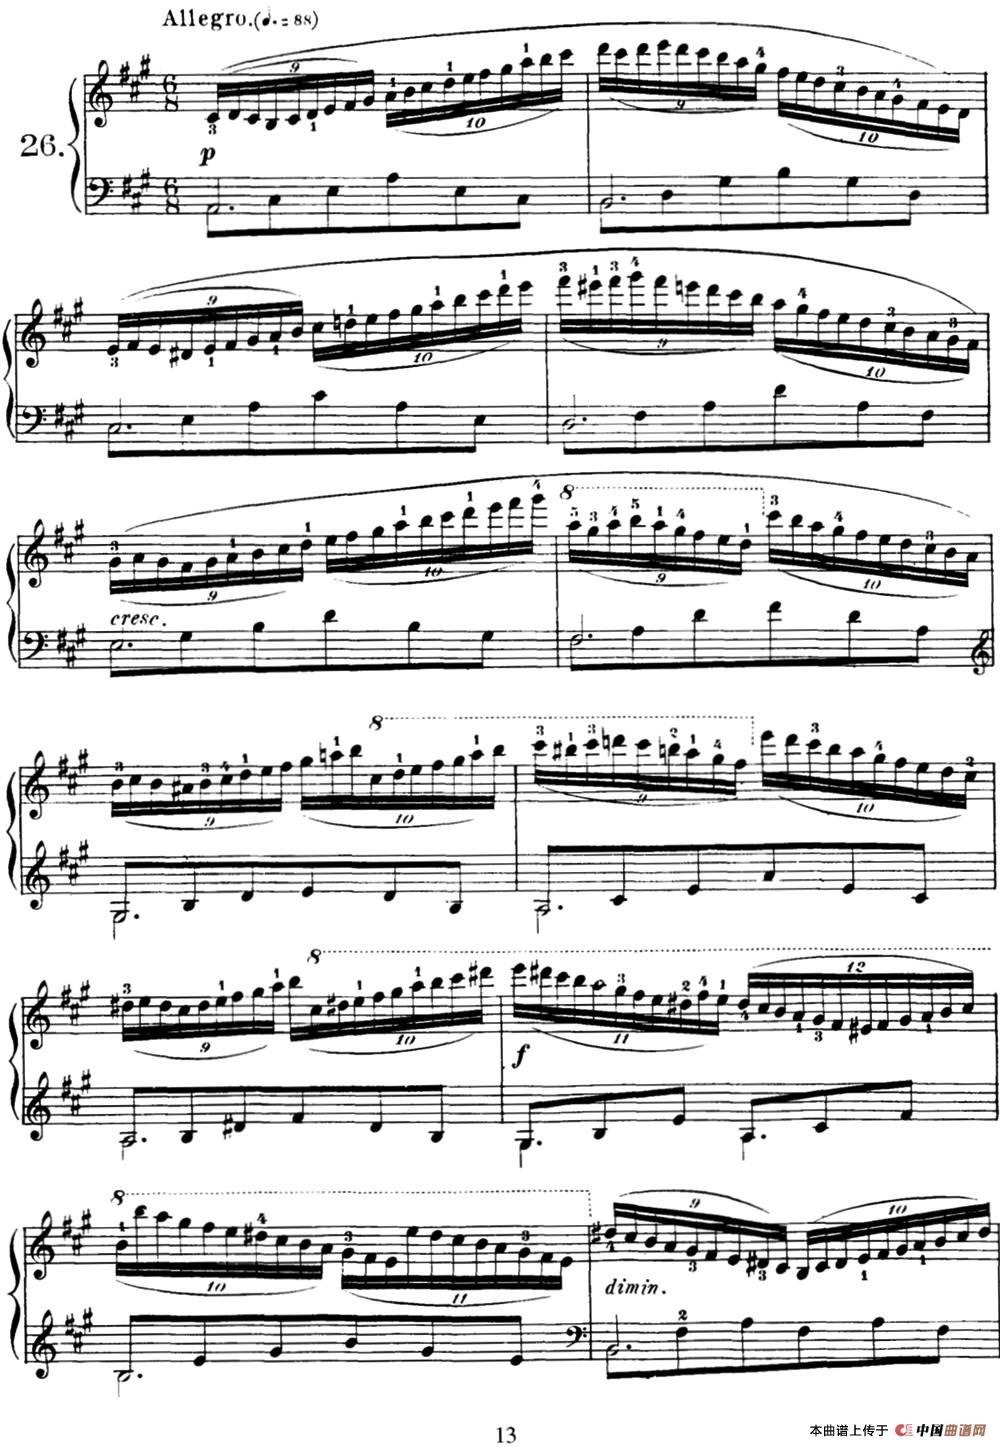 40首车尔尼Op.299钢琴快速练习曲（NO.26）(1)_C299_页面_061.jpg